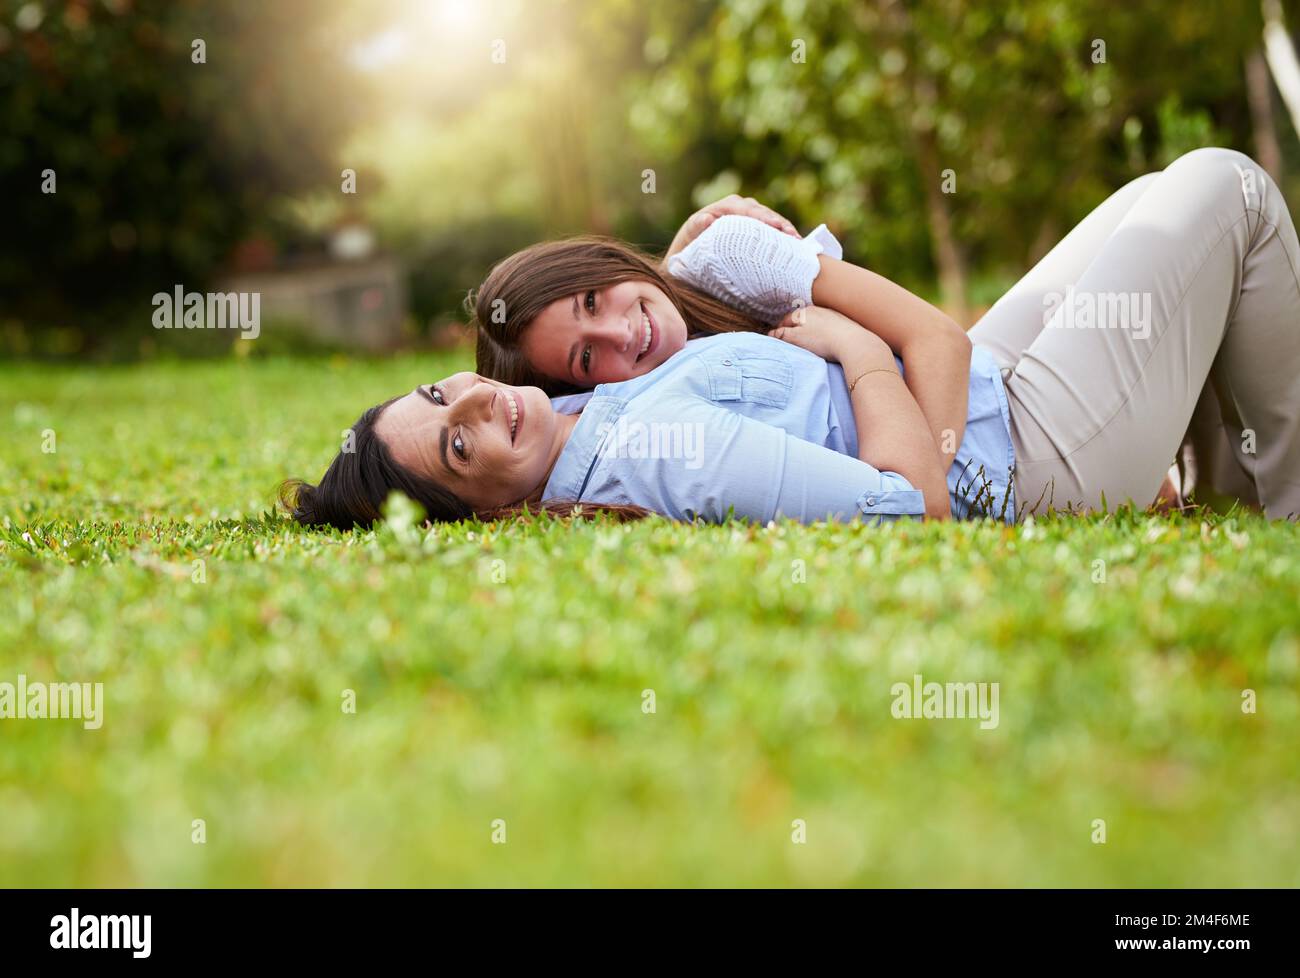 Ils se ressemblent. Portrait d'une mère gaie et de sa jeune fille allongé sur l'herbe à l'intérieur d'un parc à l'extérieur pendant la journée. Banque D'Images